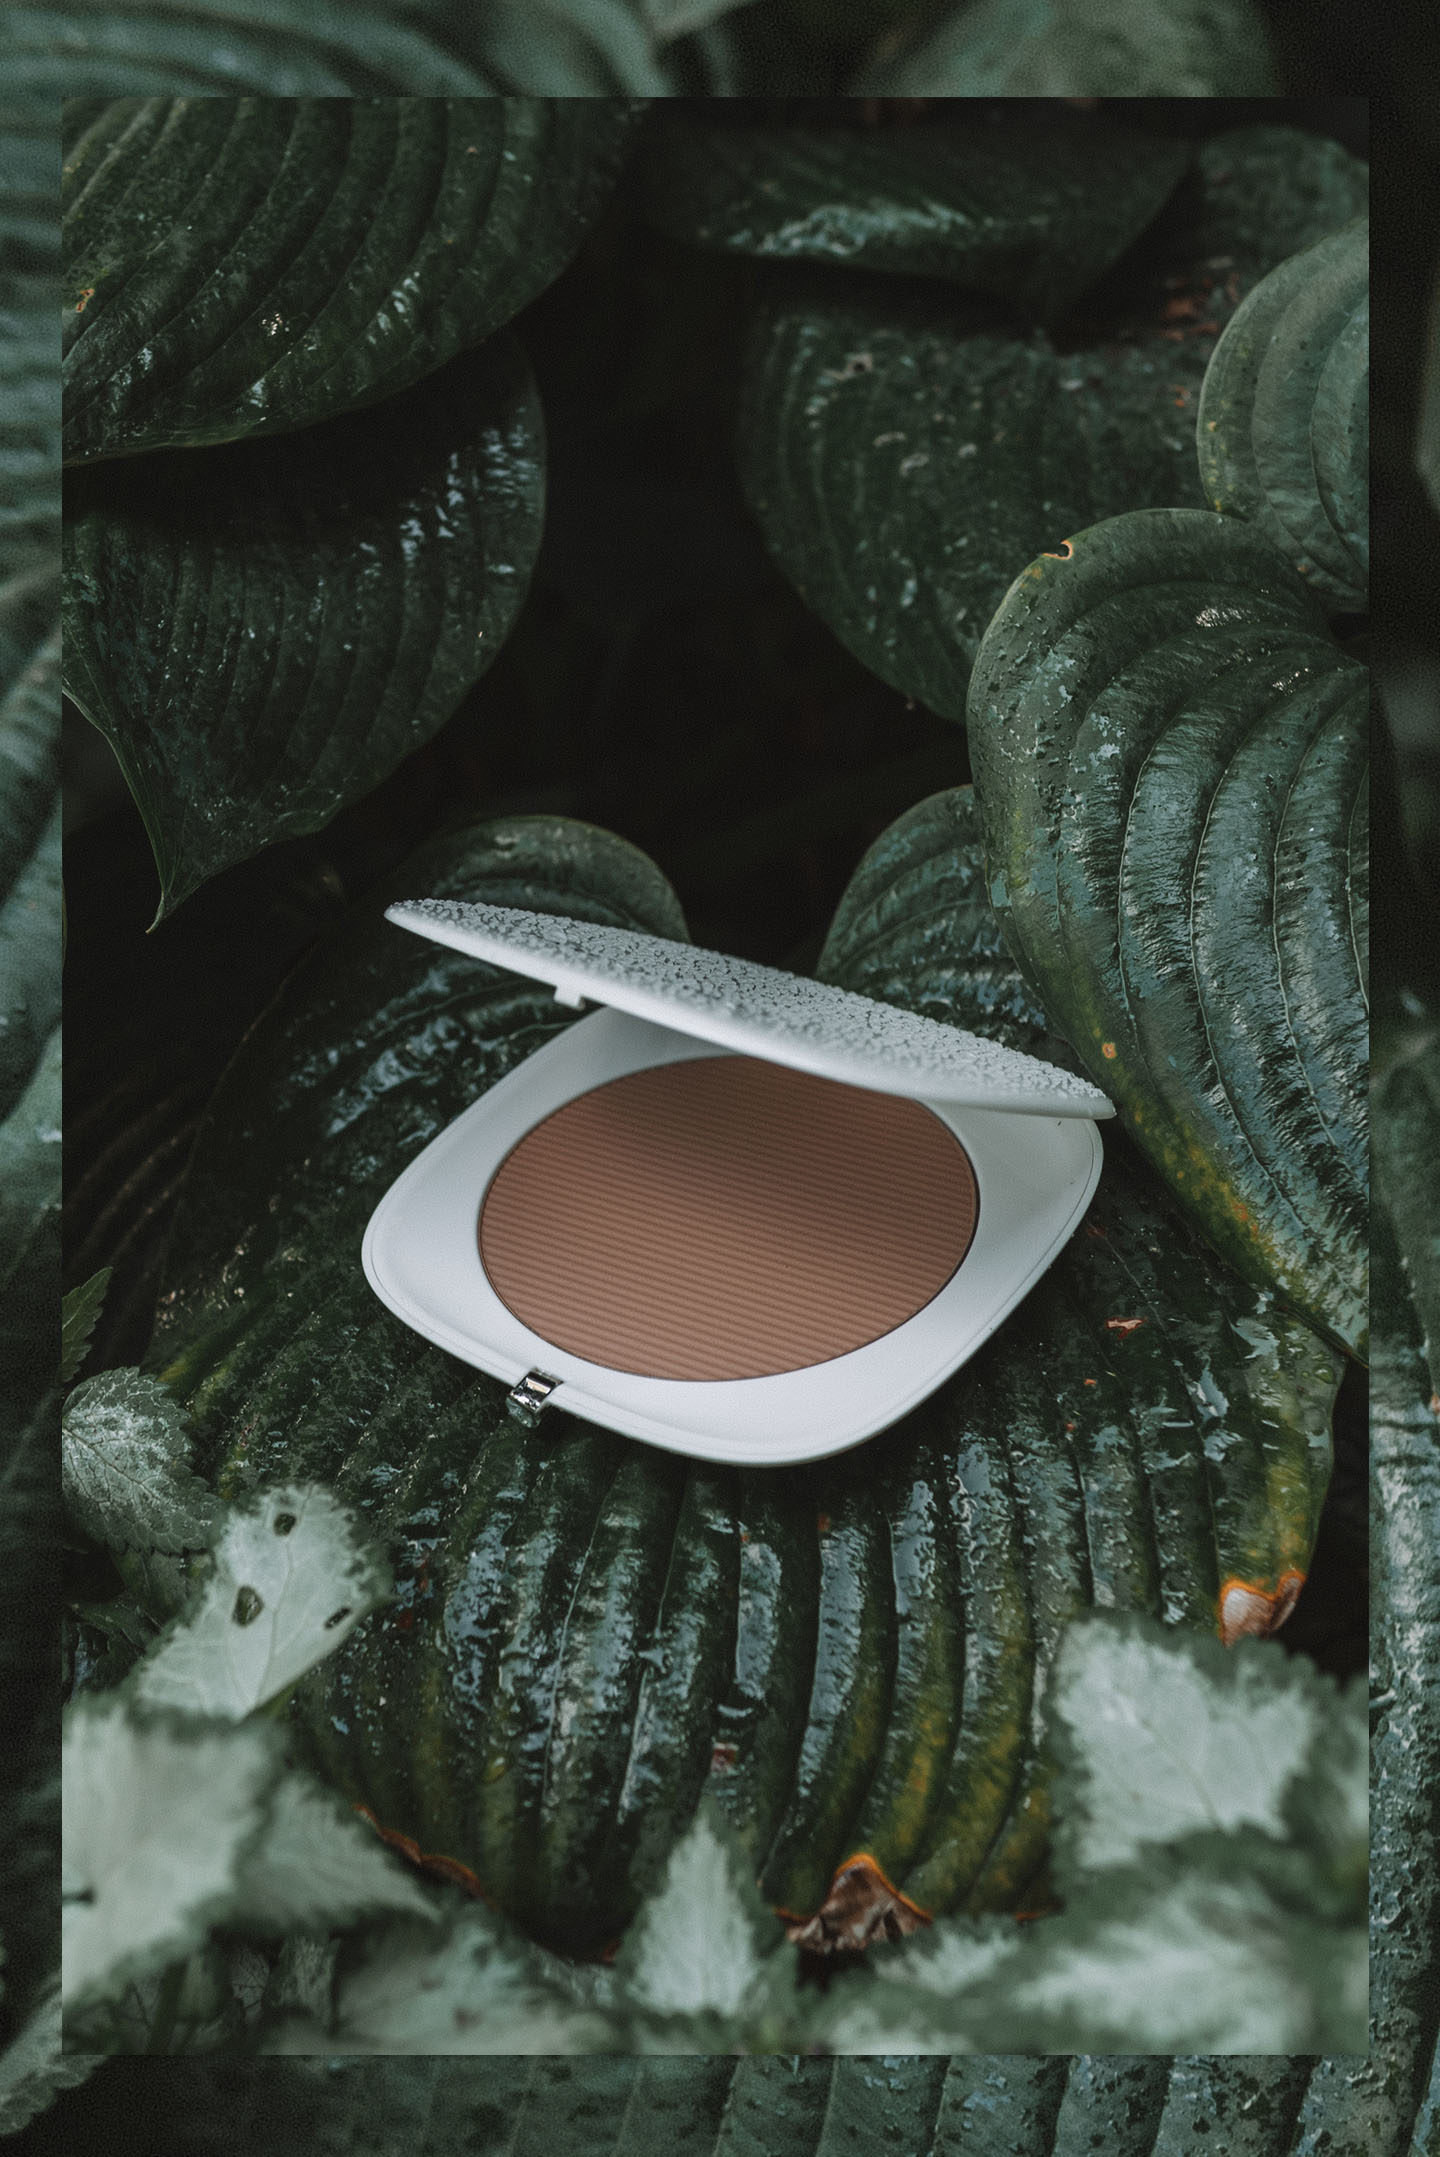 Marc Jacobs o!mega Coconut bronzer perfect tan 104 tan-tastic!